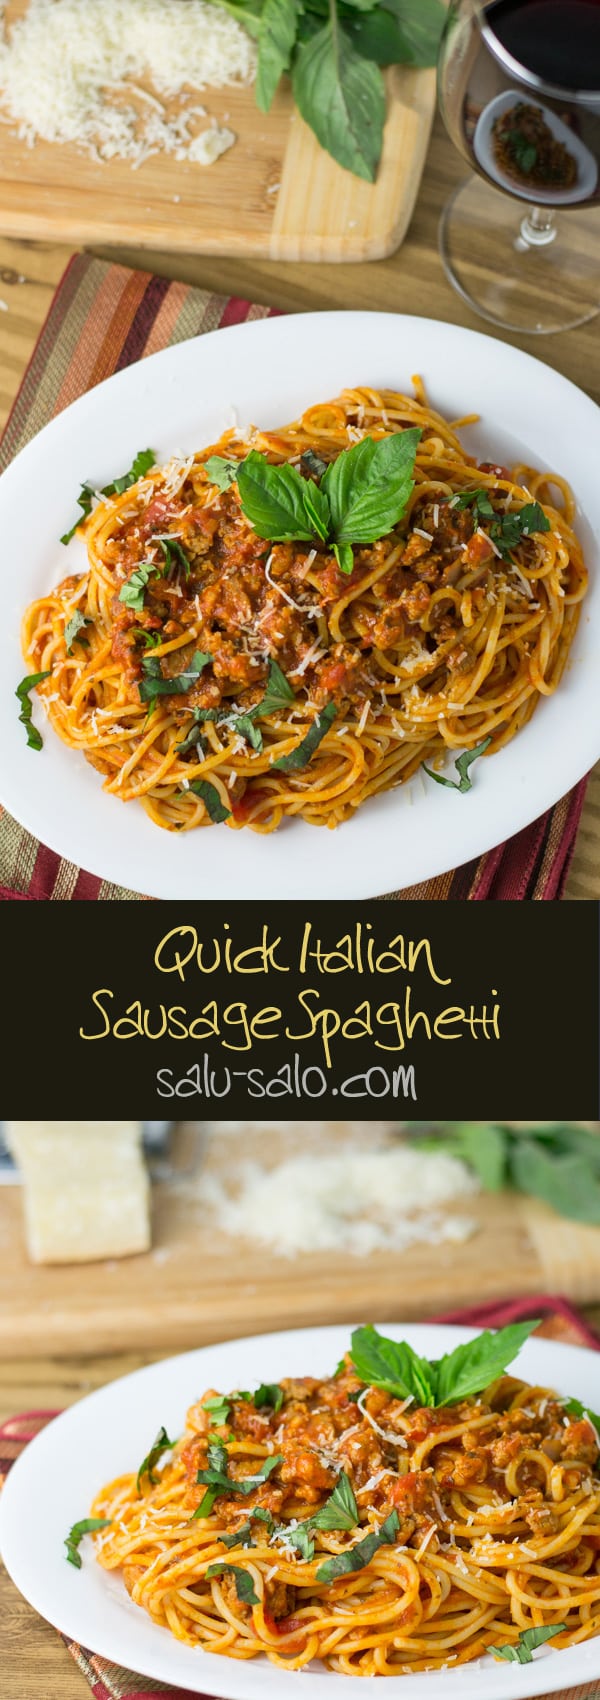 Quick Italian Sausage Spaghetti